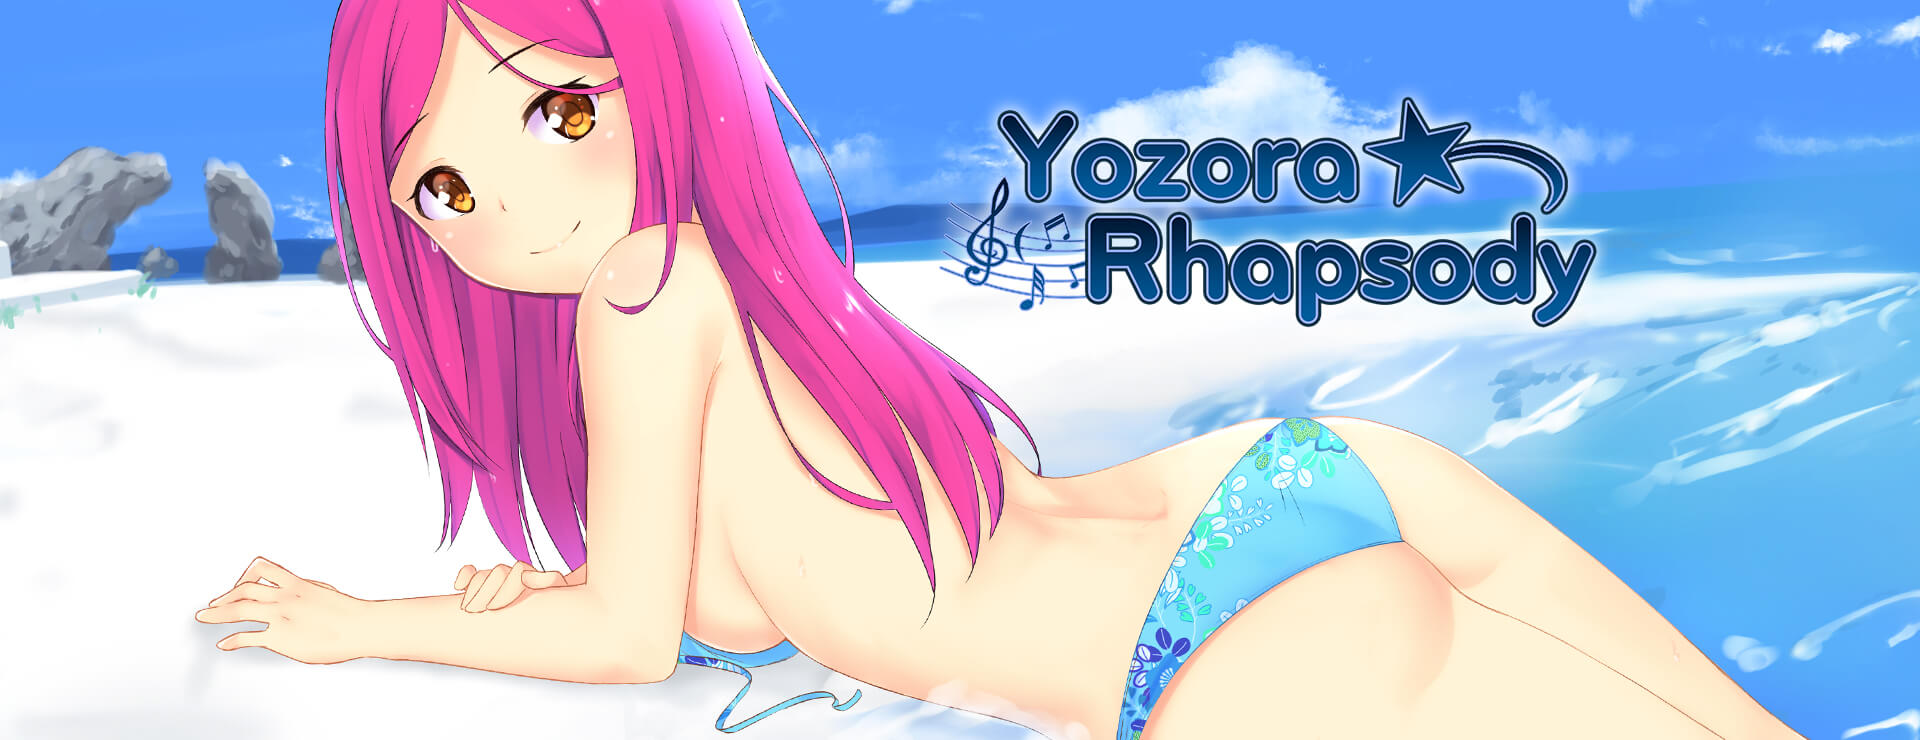 Yozora Rhapsody - Japanisches Adventure Spiel